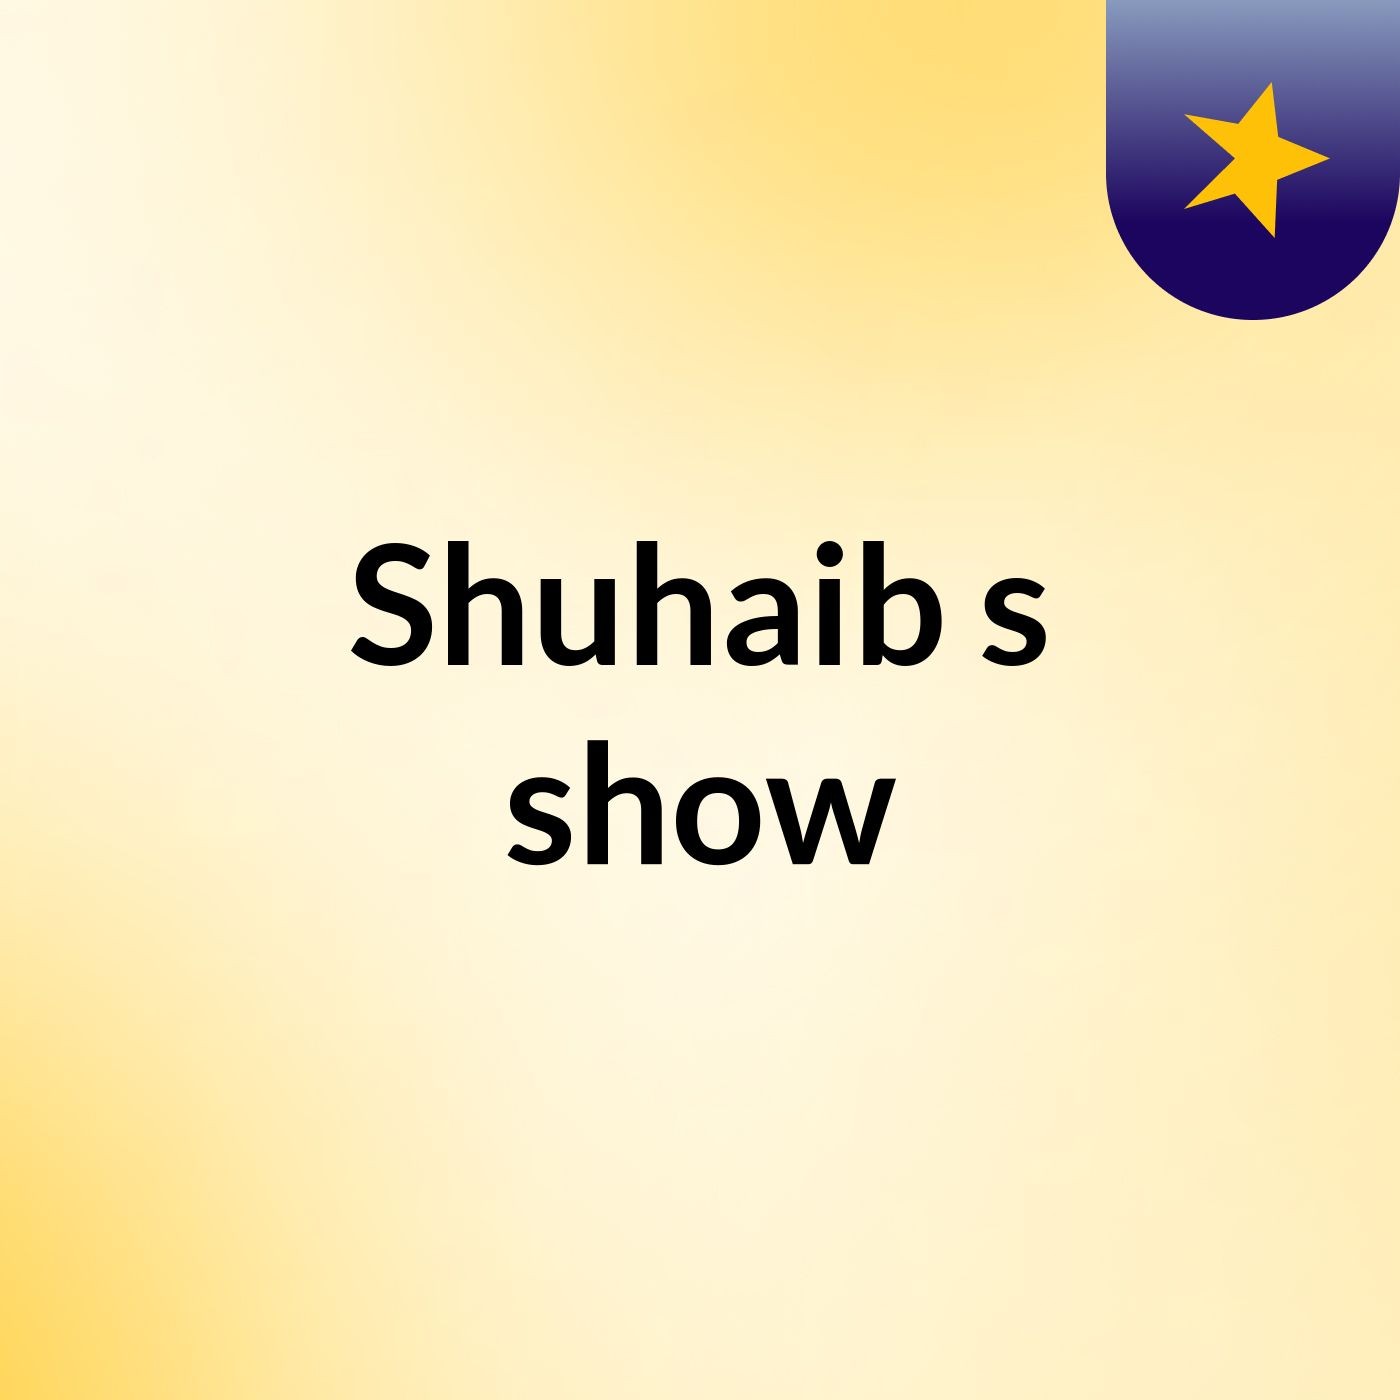 Shuhaib's show